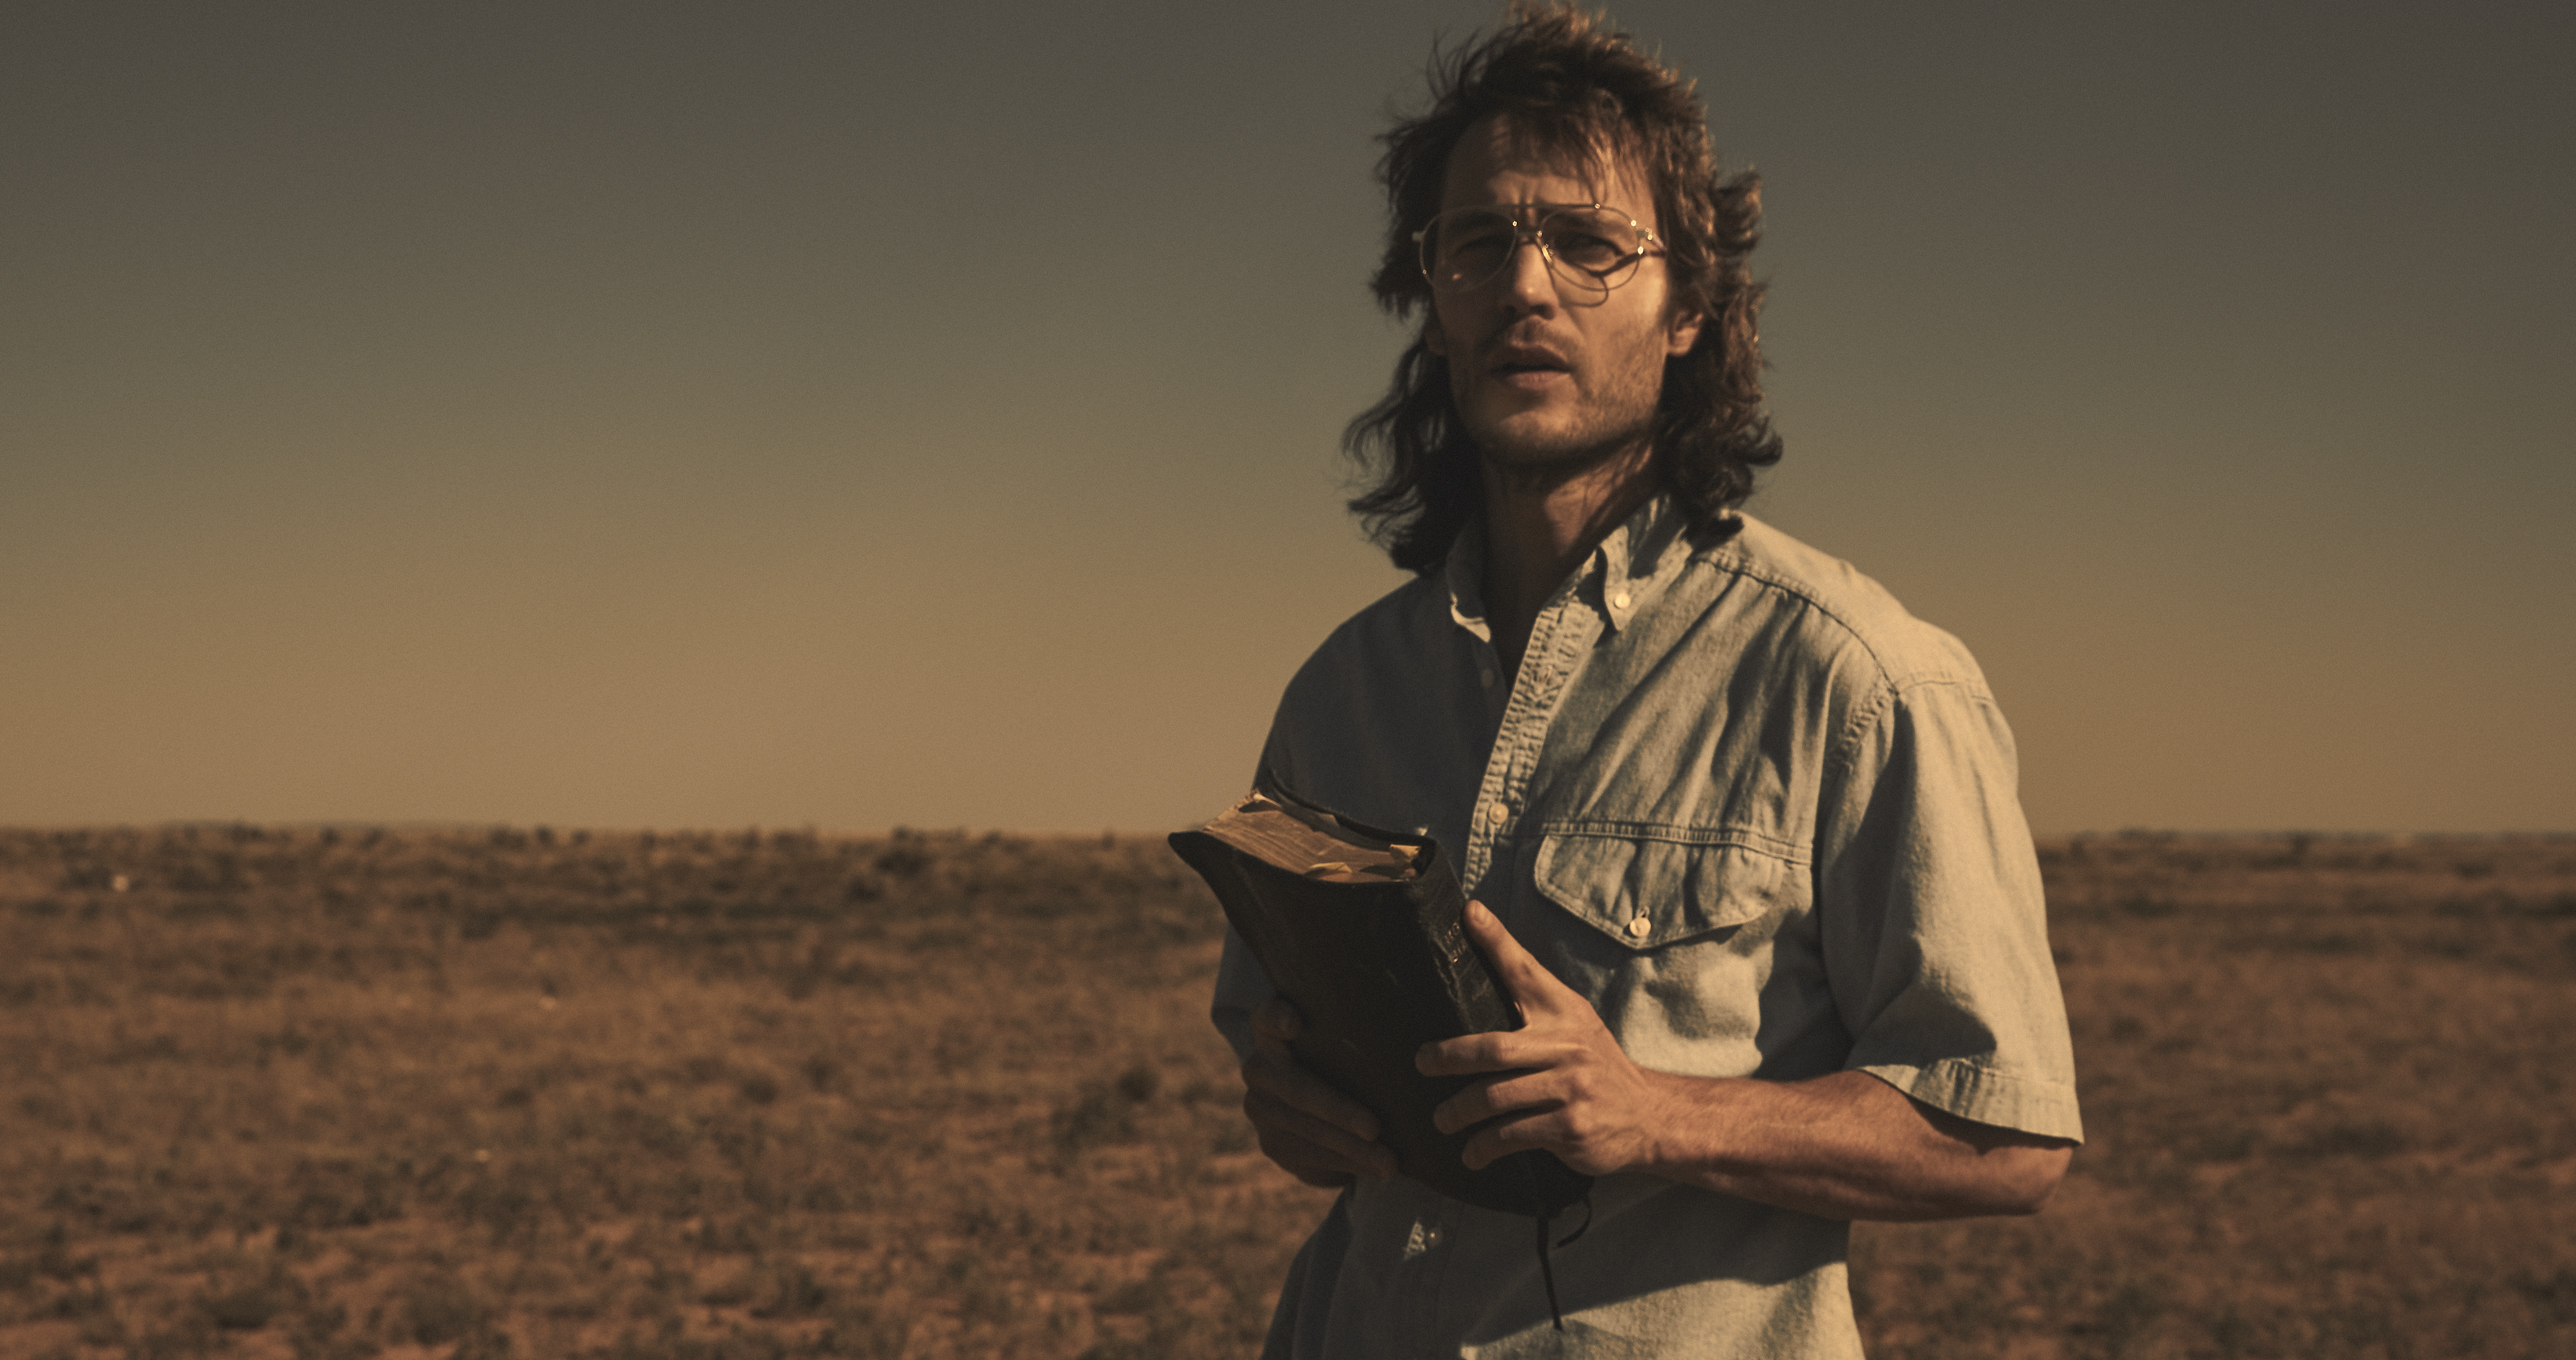 'Waco' Miniseries Recalls Tragic Standoff, Premieres on Paramount